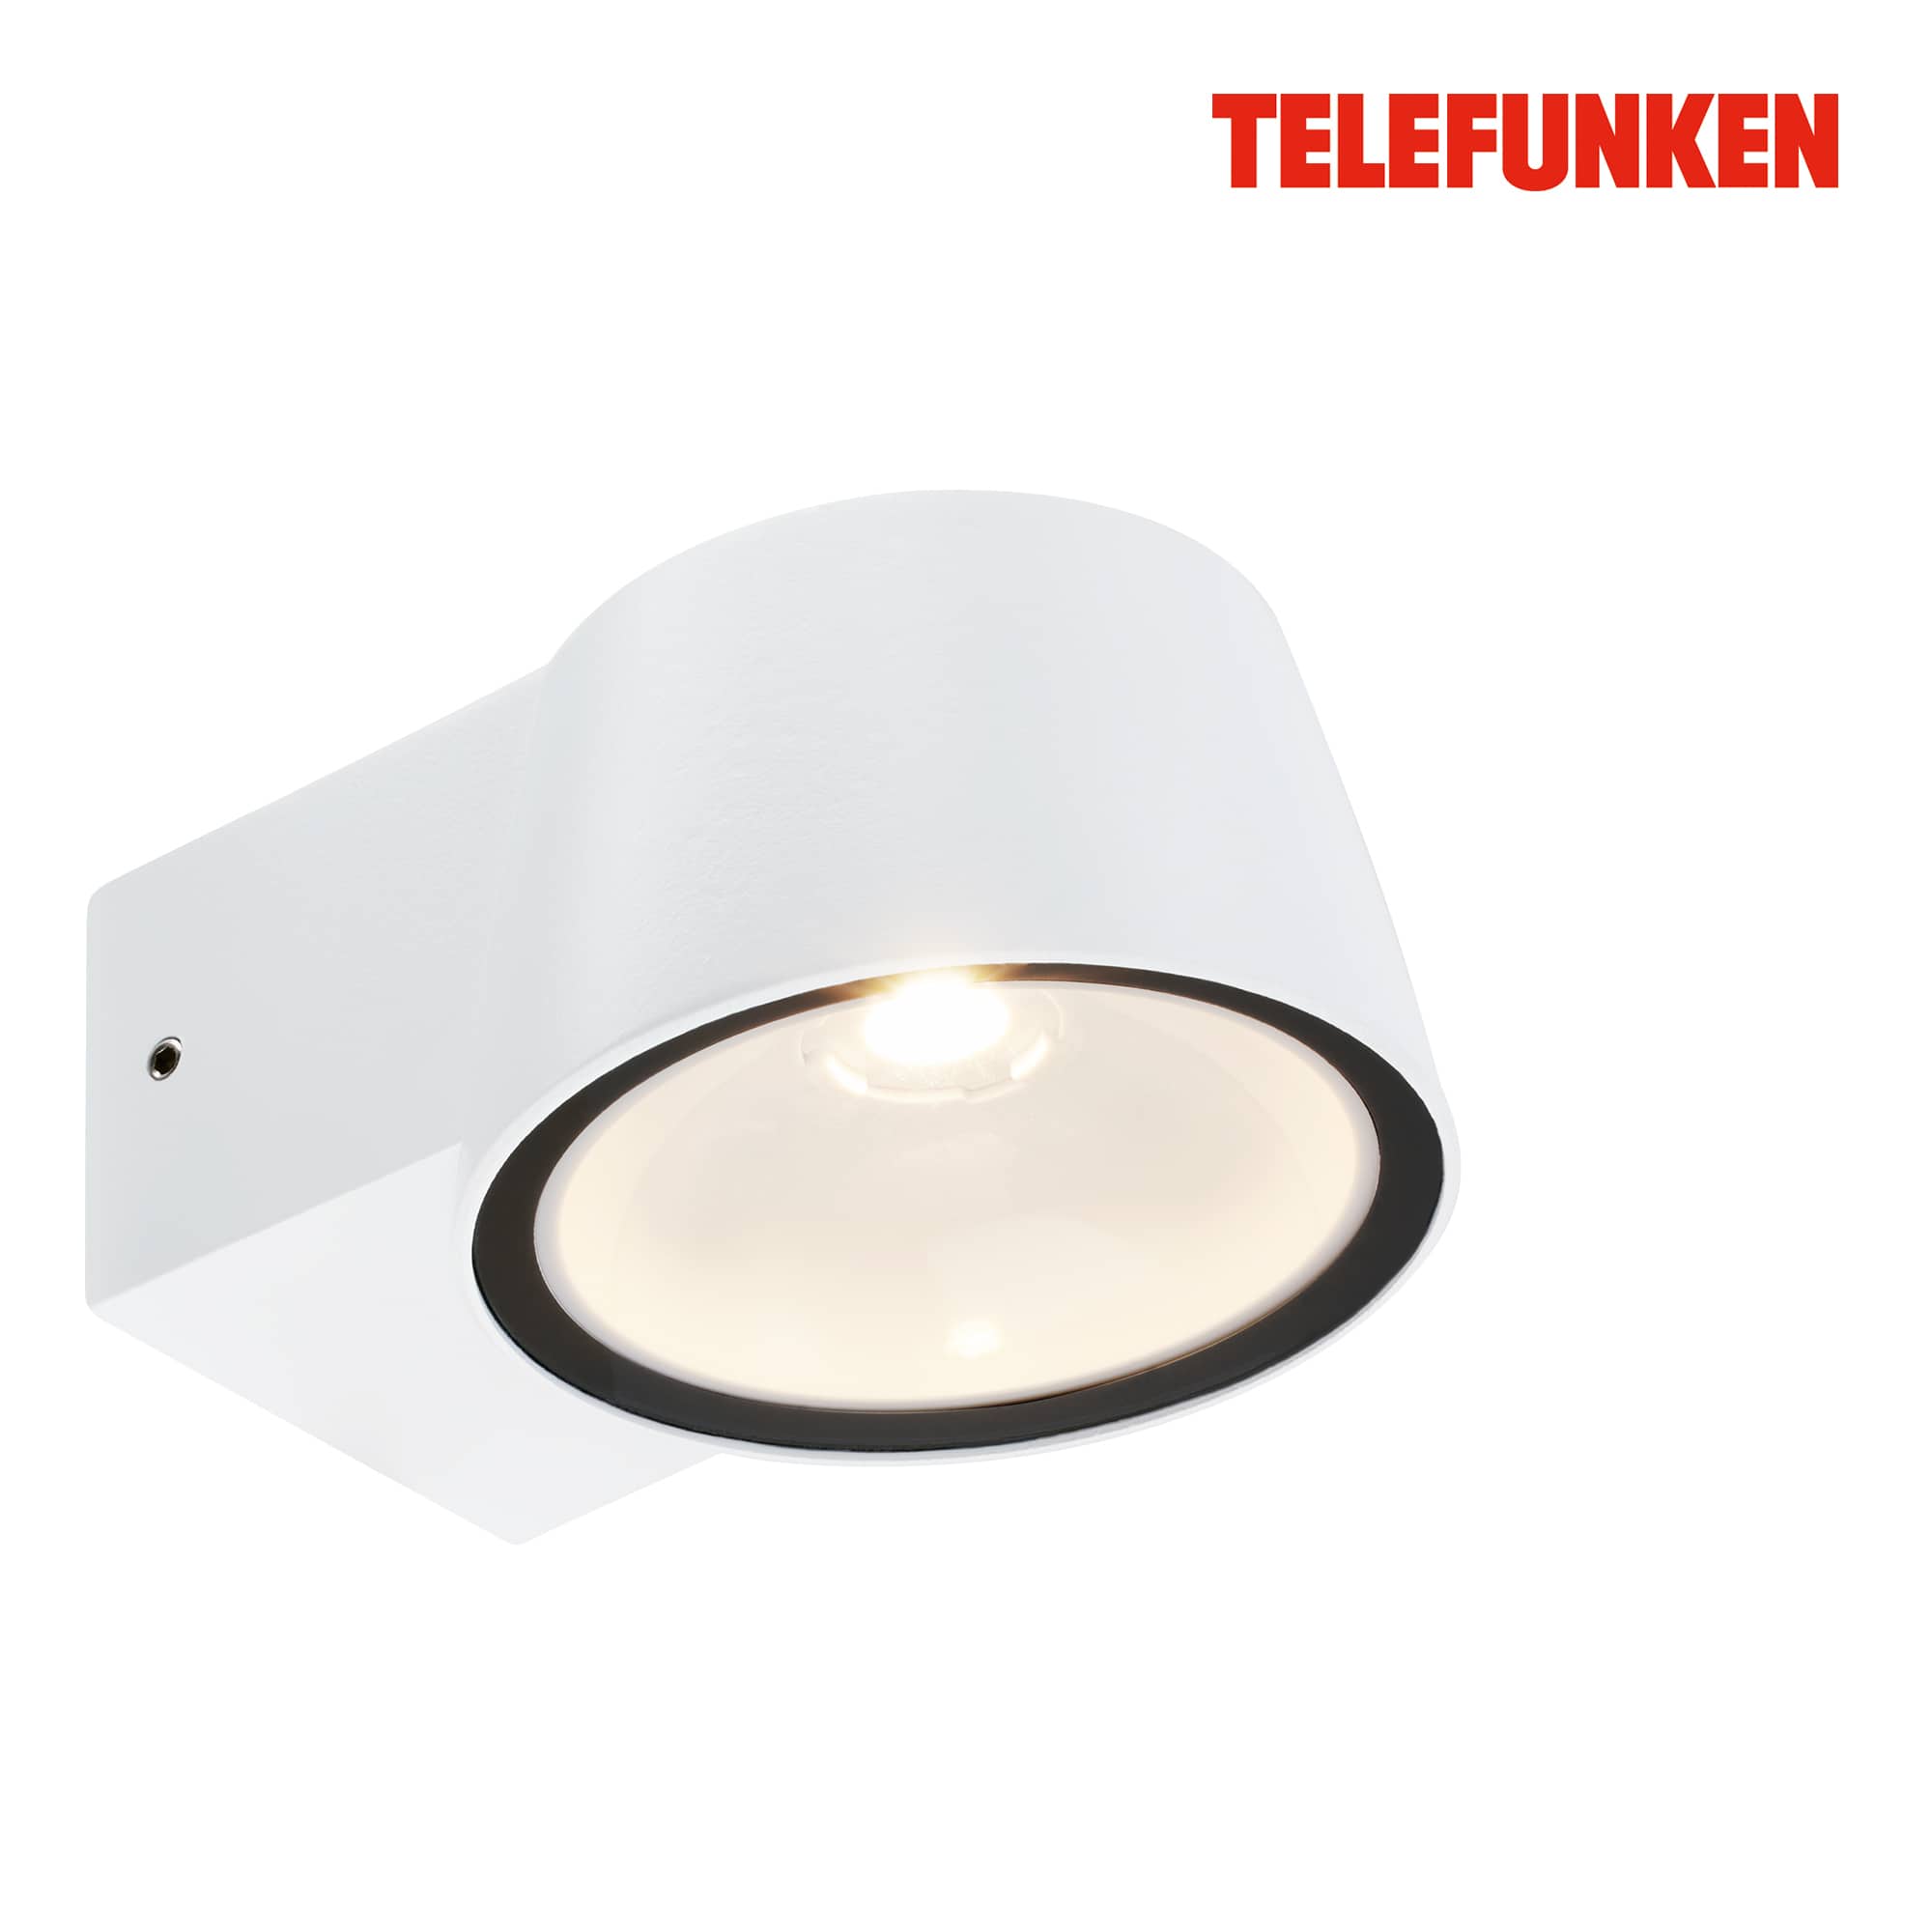 Telefunken LED Wandlampe, Spritzwasser- und Staubschutz, On/Off